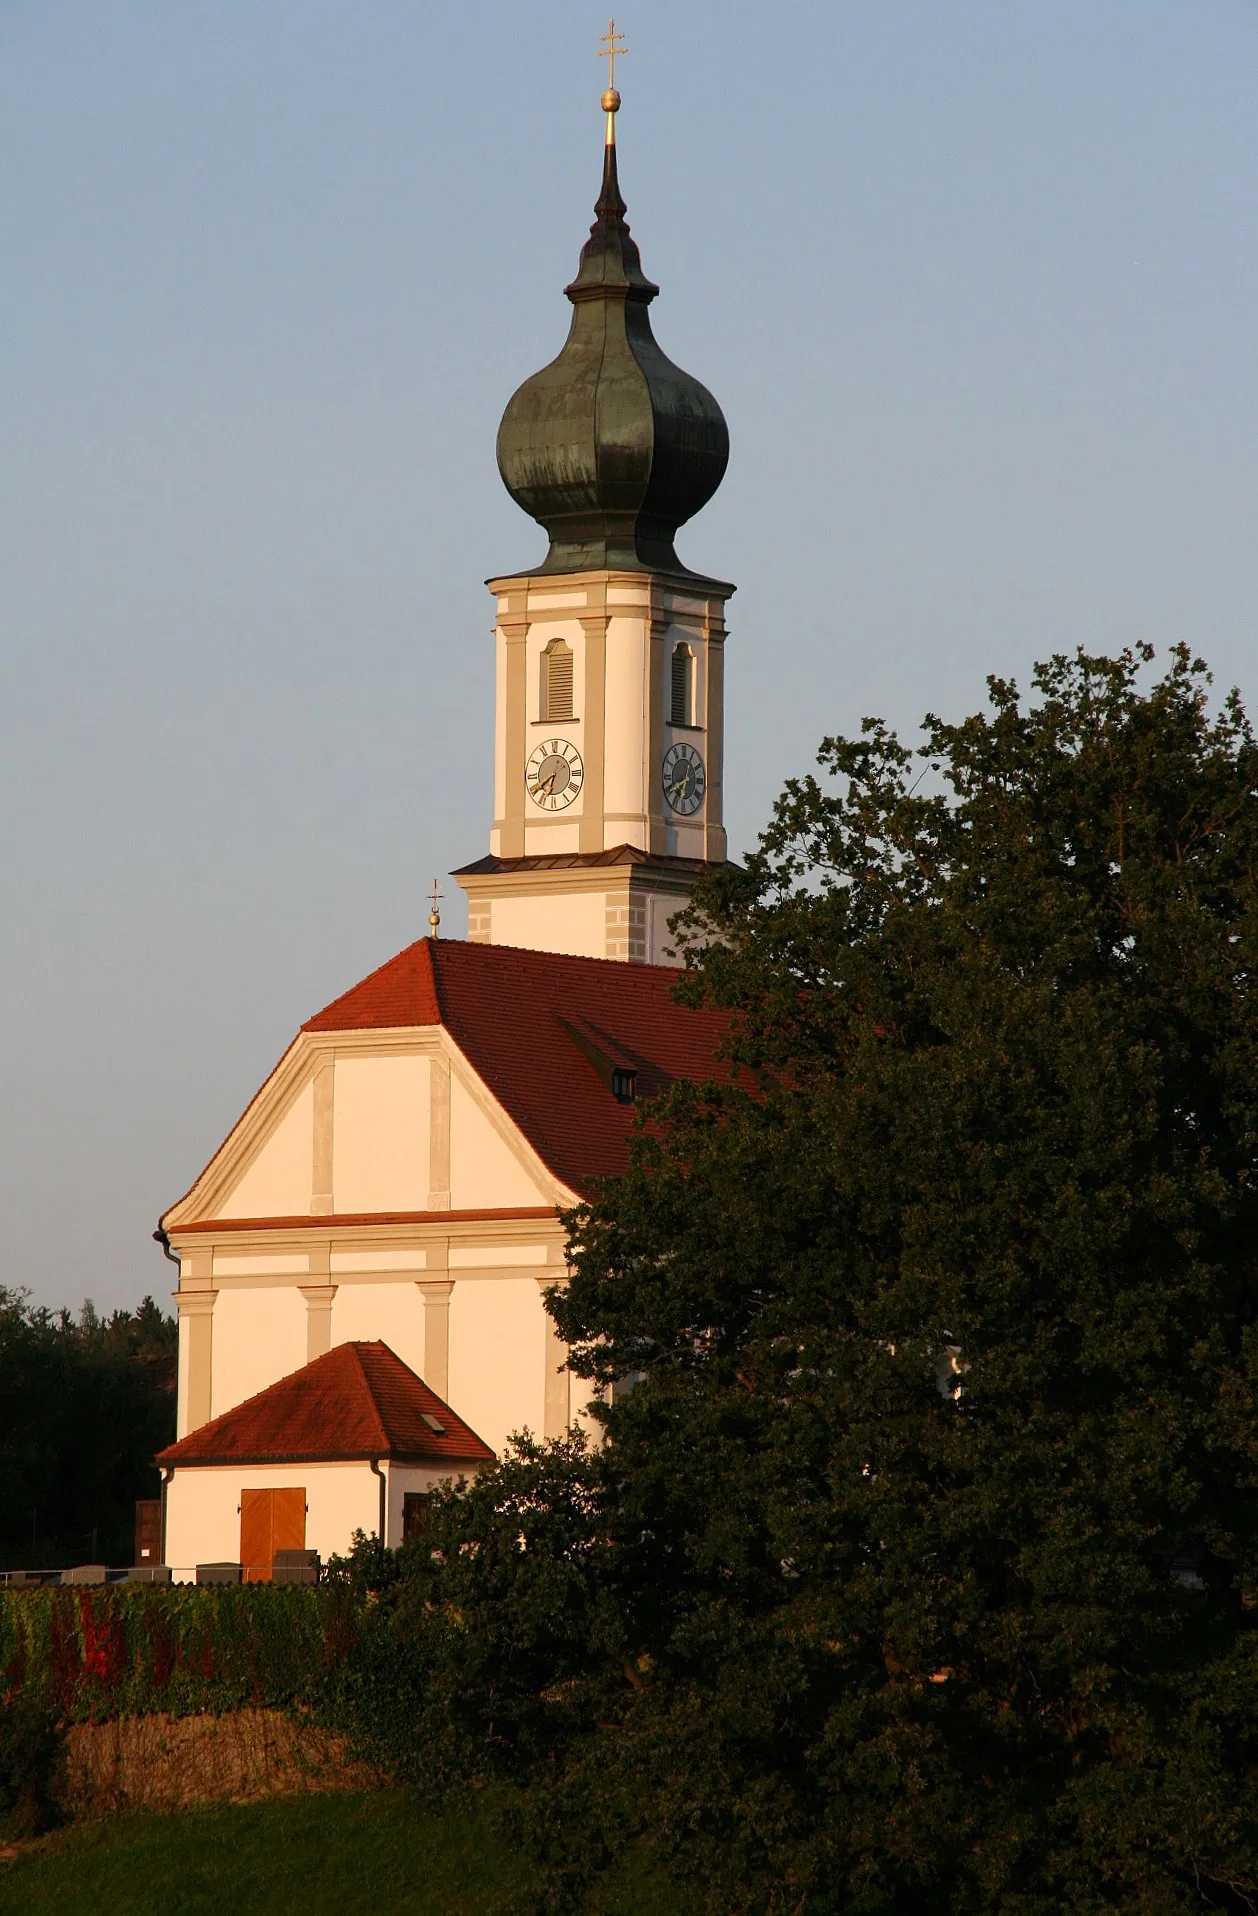 Photo showing: St. Martin, die katholische Pfarrkirche von Niedertaufkirchen (Landkreis Mühldorf am Inn, Oberbayern). Der ansehnliche Barockbau, errichtet 1723, steht durch die erhöhte Position reizvoll in der nördlichen Hügellandschaft des Landkreises.